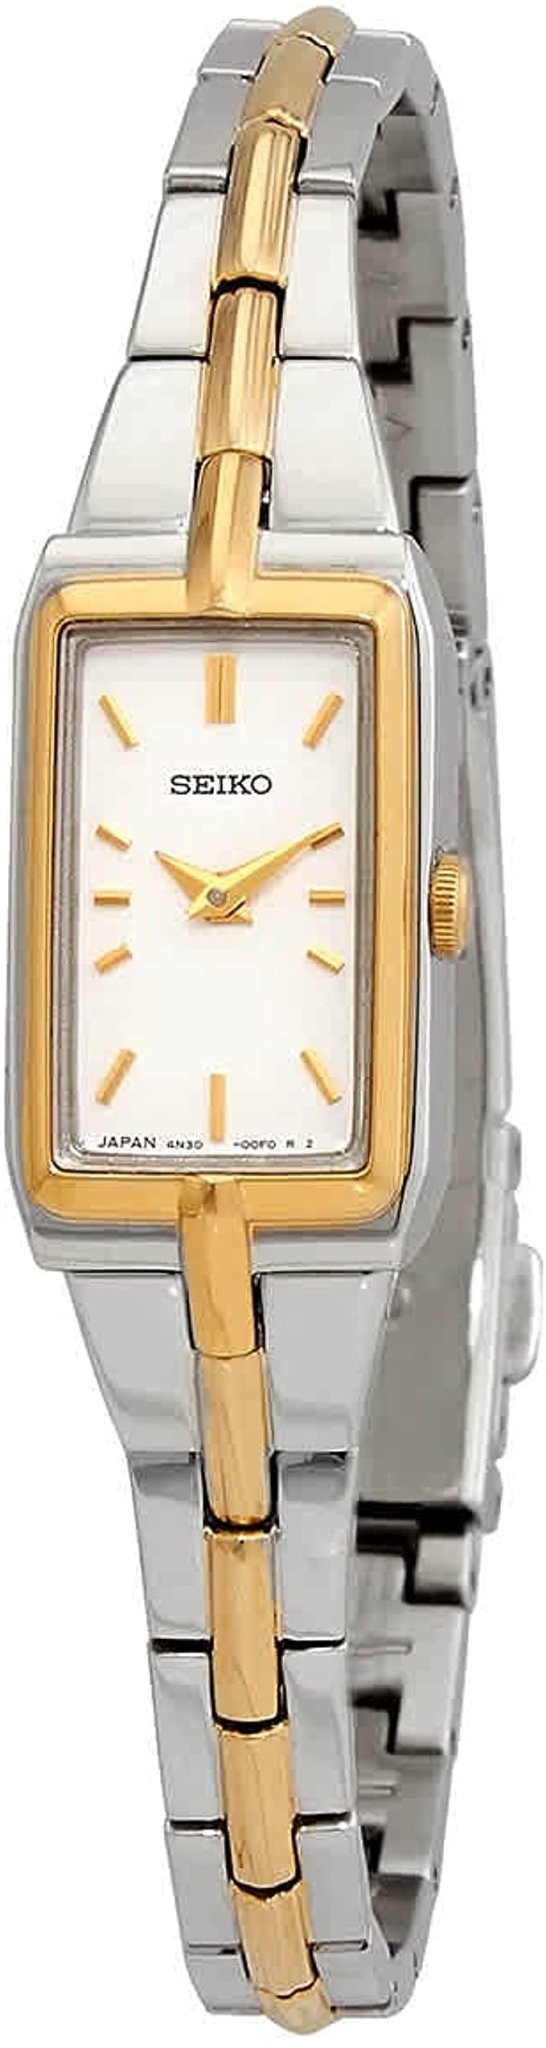 Ladies Seiko Watch SWR044 - Walter Bauman Jewelers